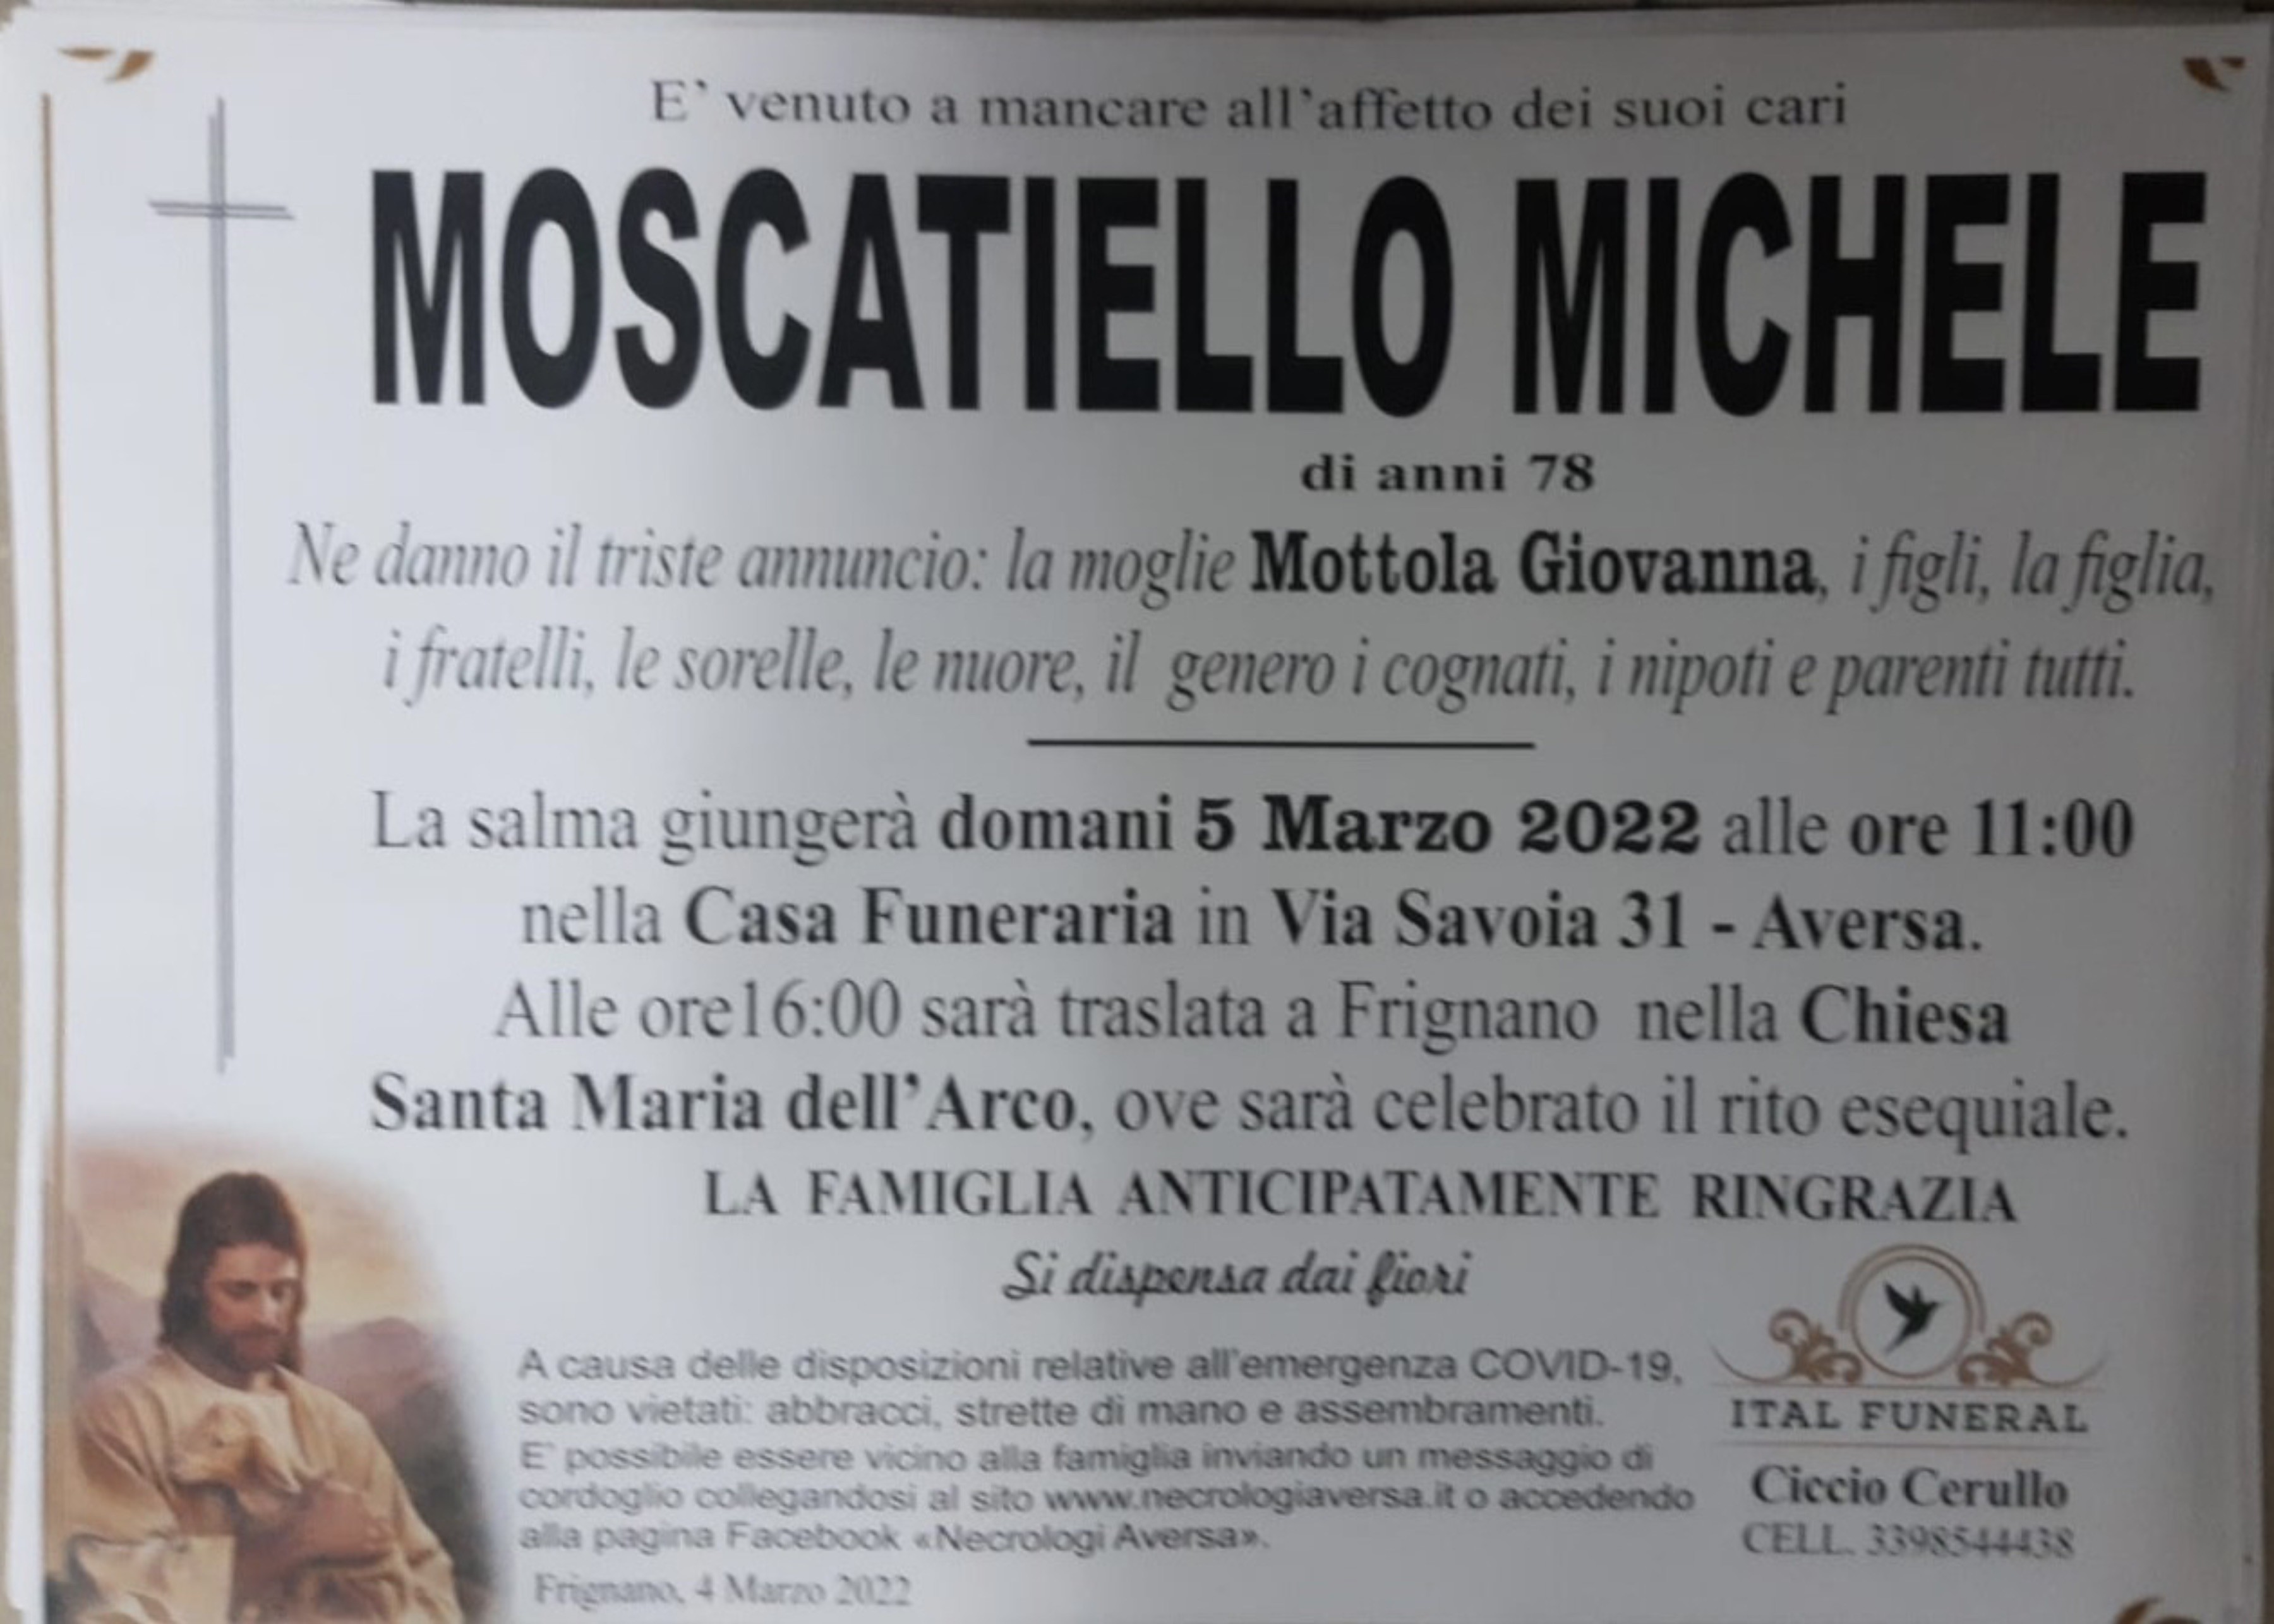 Michele Moscatiello